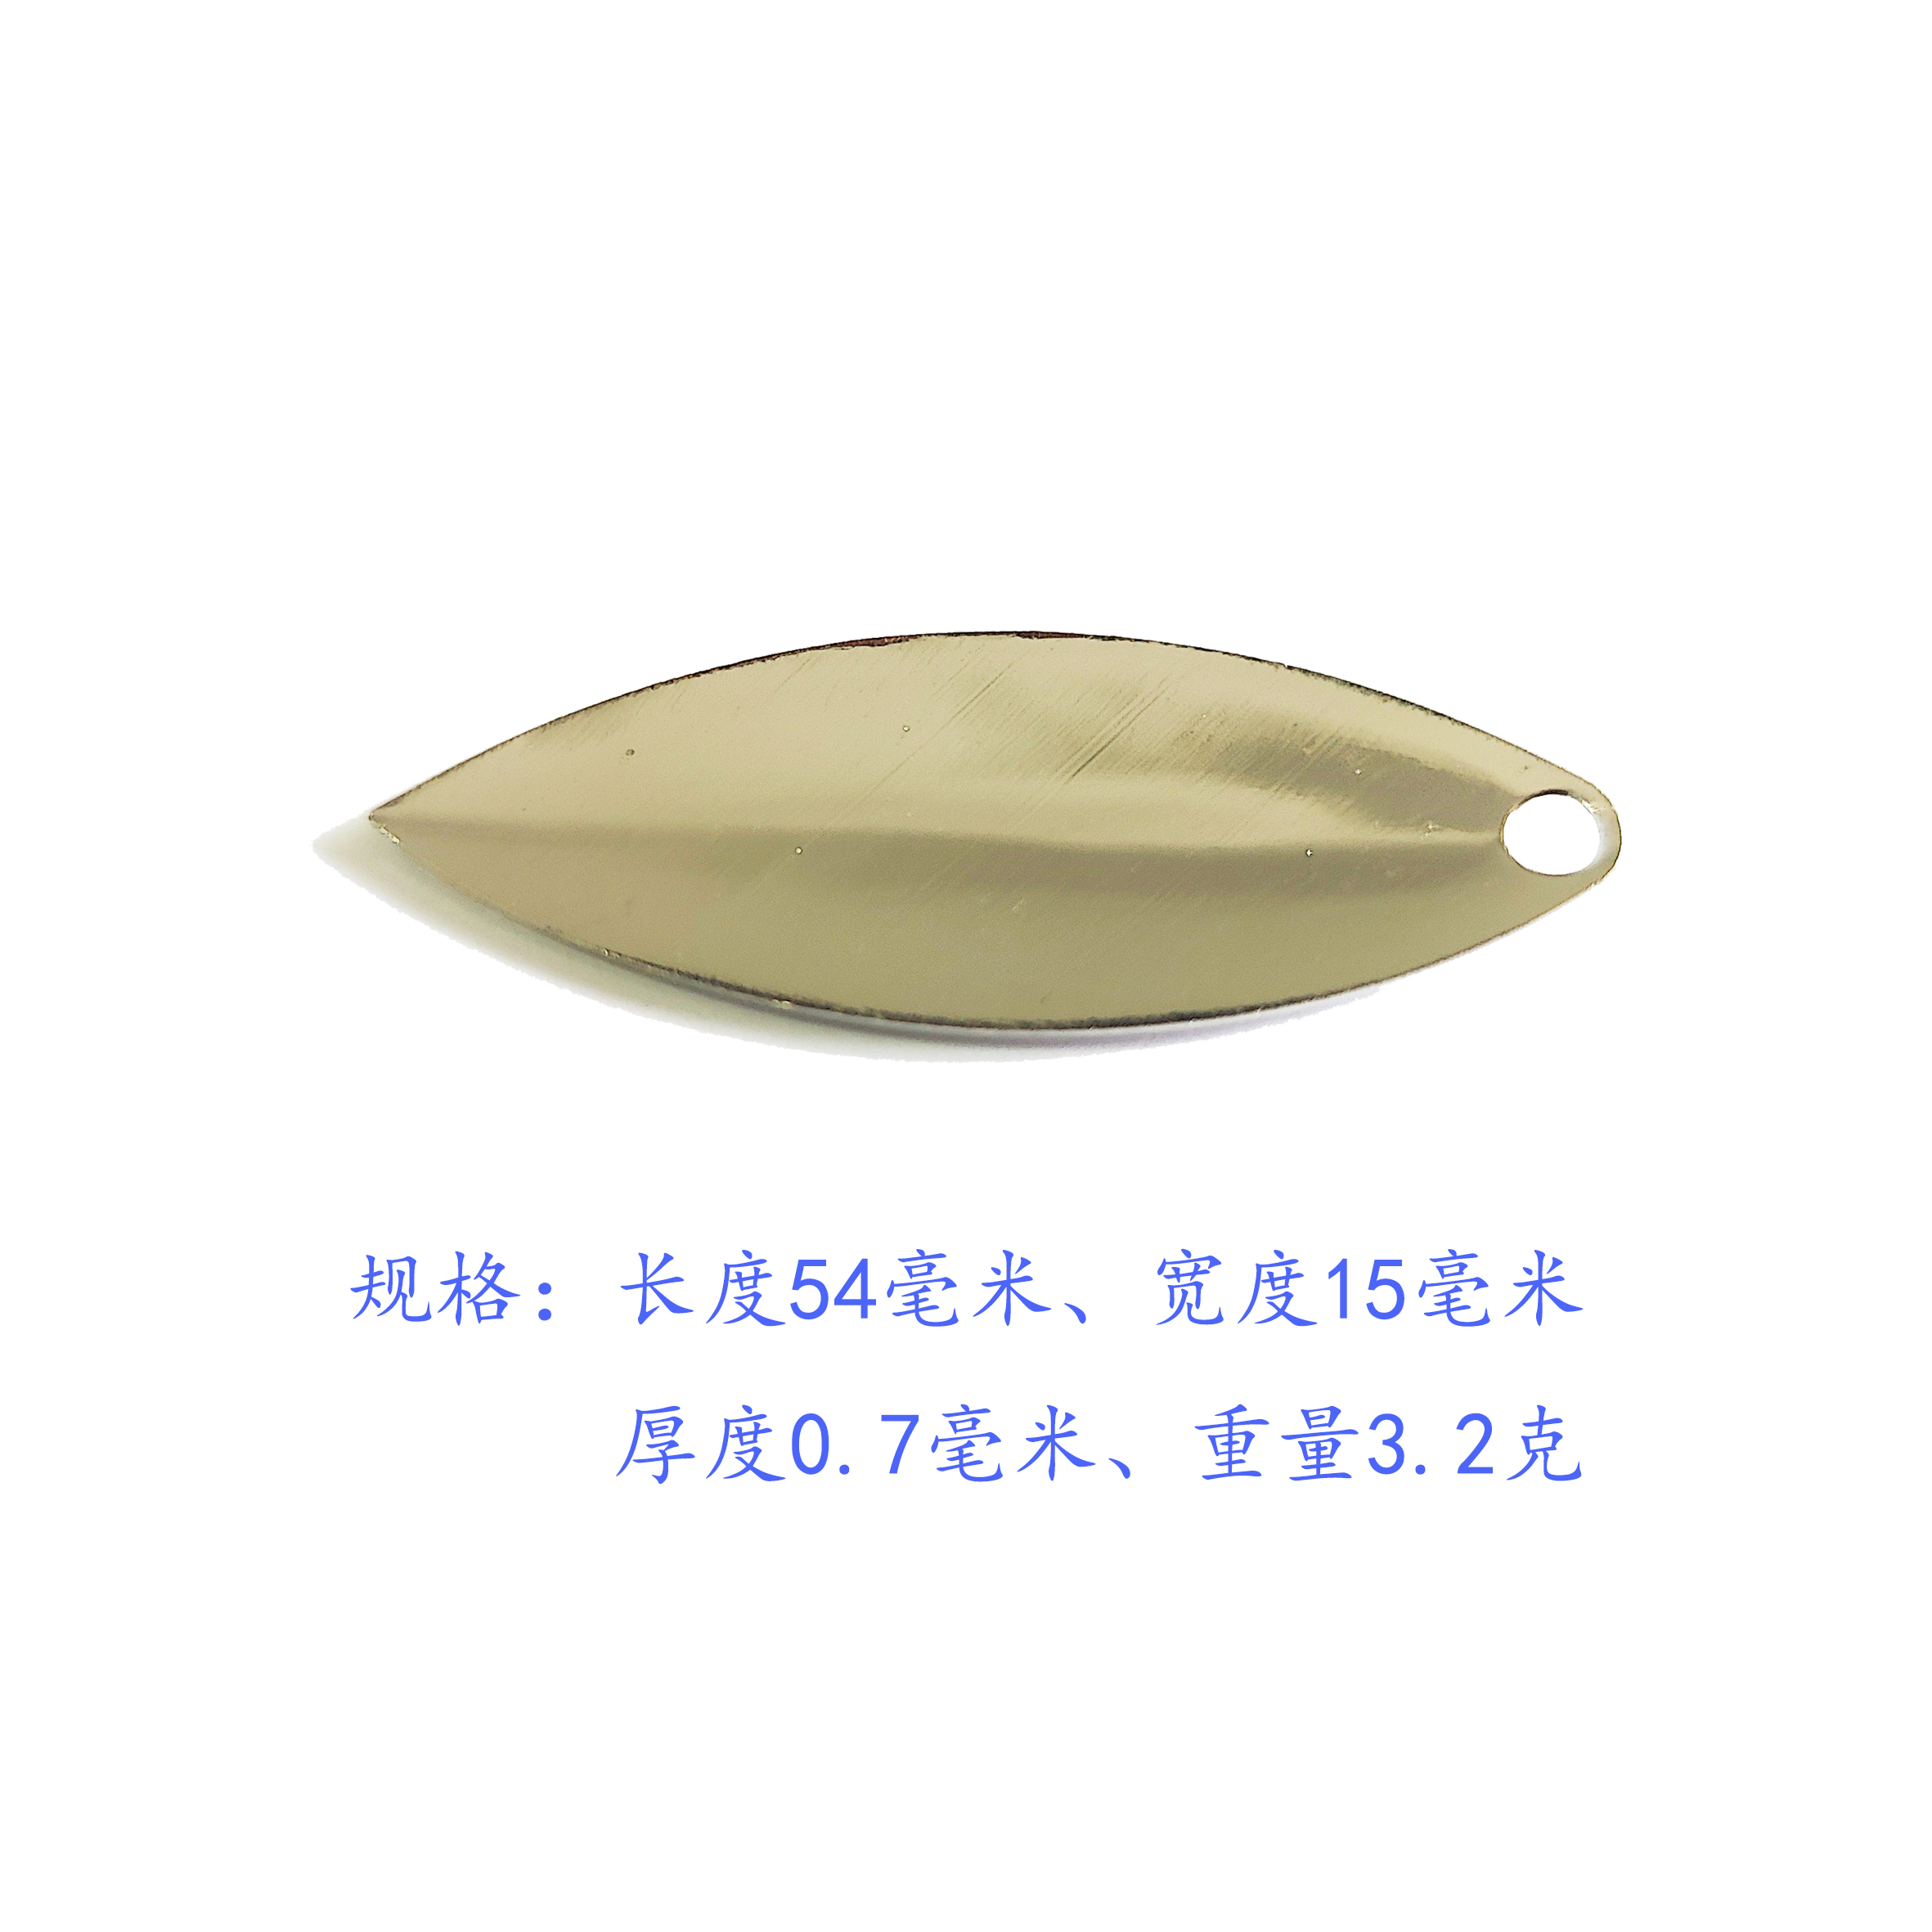 冠军路亚组装的亮片 DIY配件 白条海鲈鱼 旋转复合假饵柳叶形状